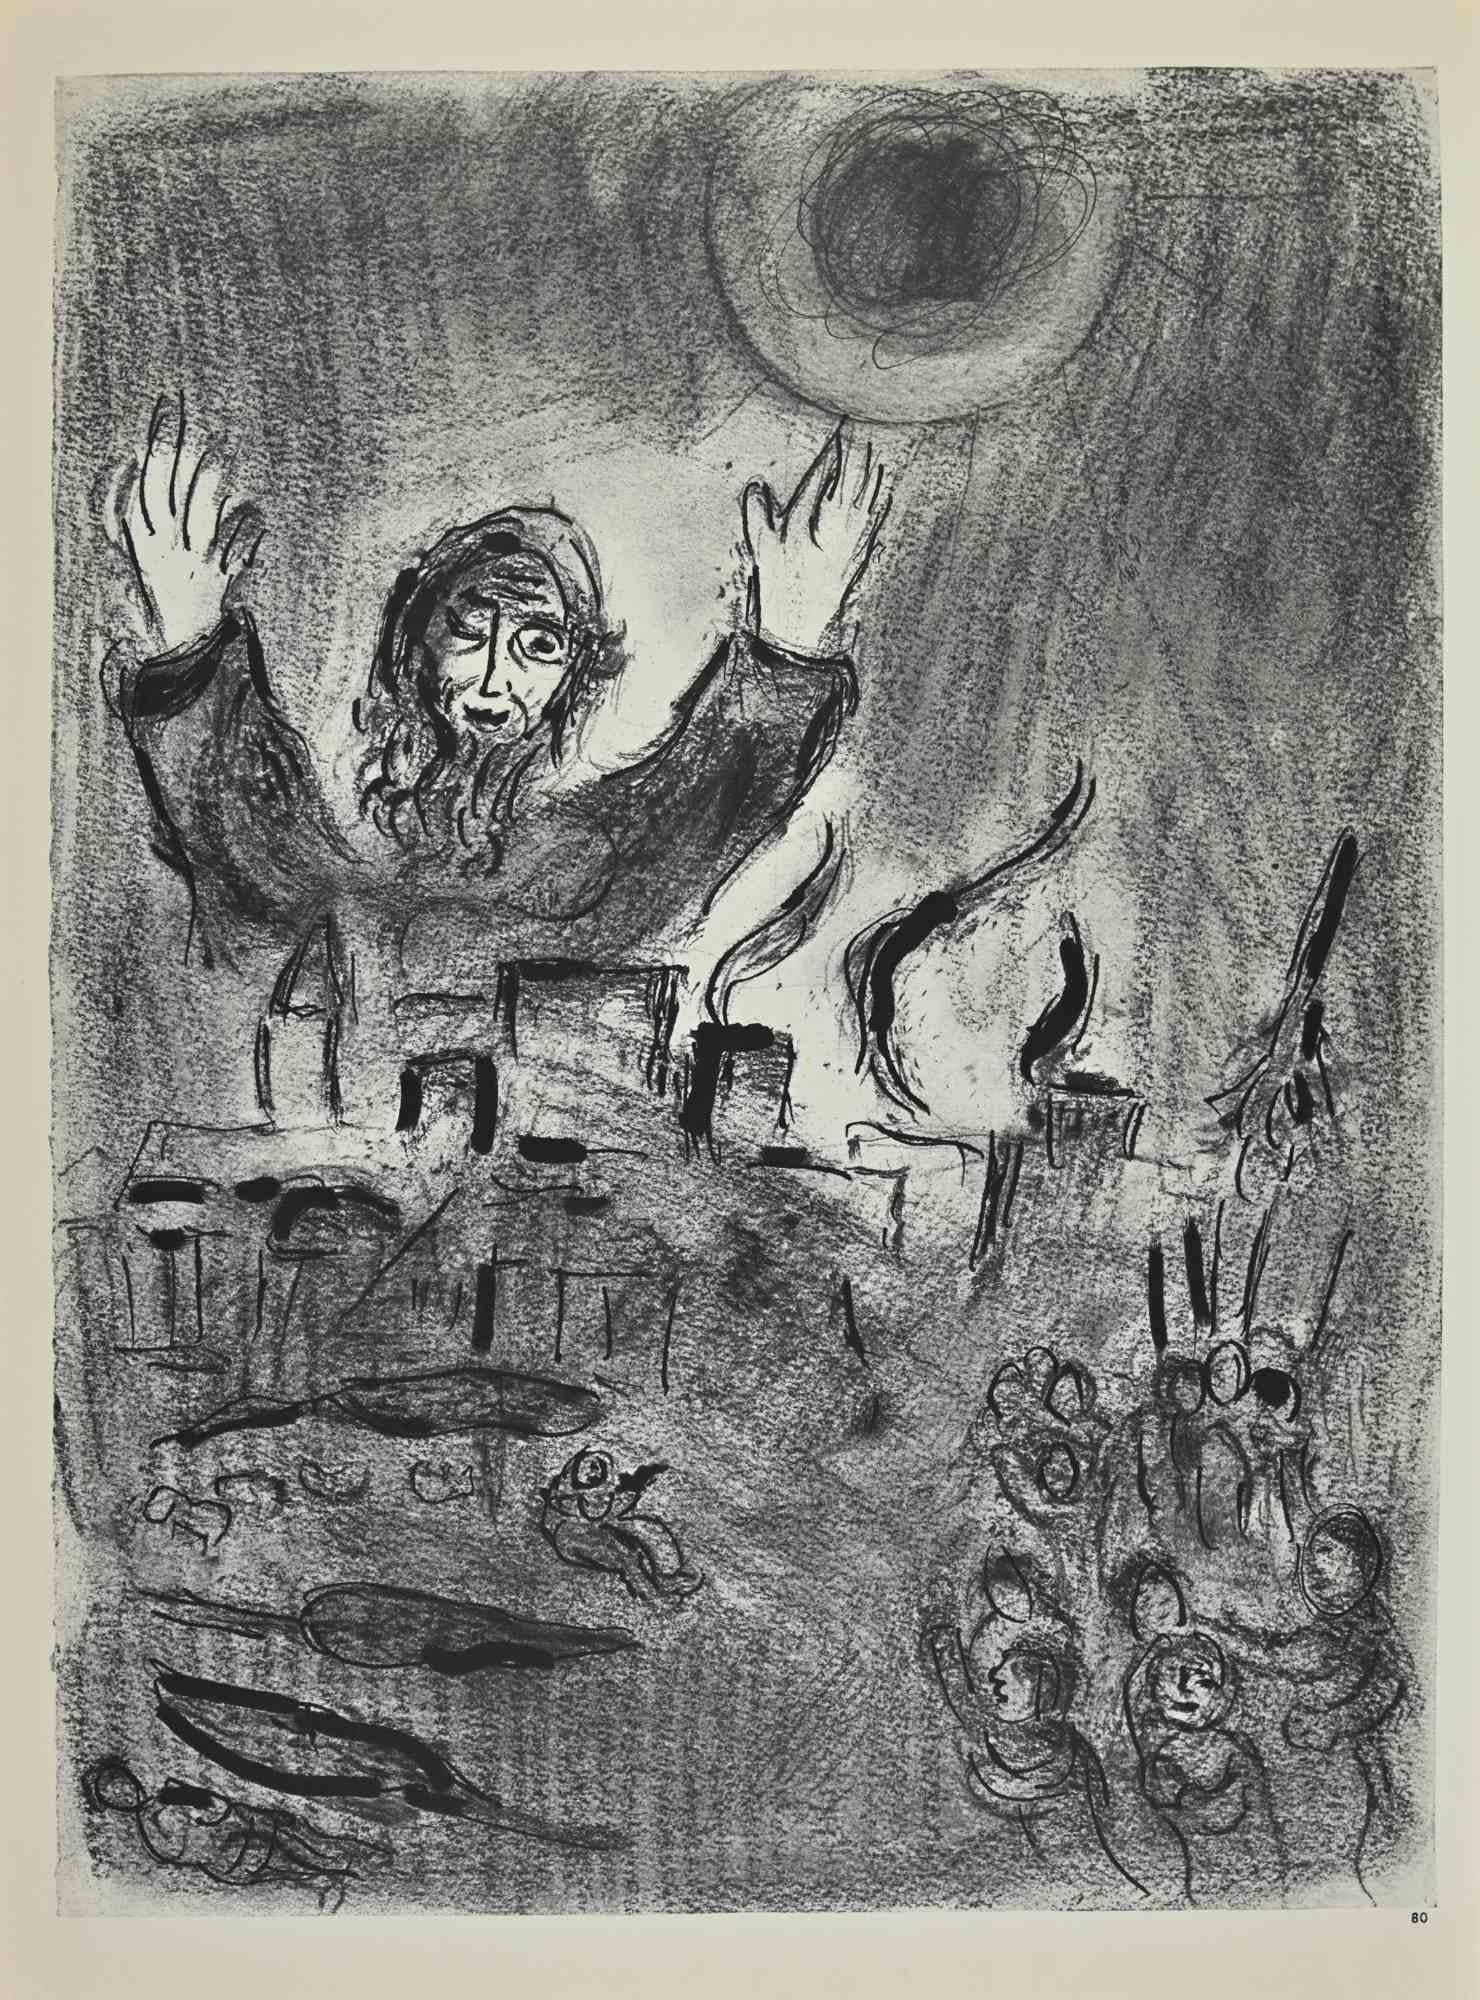 Devastation of Locusts ist ein Kunstwerk von Marc Chagall aus den 1960er Jahren.

Lithographie auf braun getöntem Papier, ohne Signatur.

Lithographie auf beiden Blättern.

Auflage von 6500 unsignierten Lithografien. Gedruckt von Mourlot und